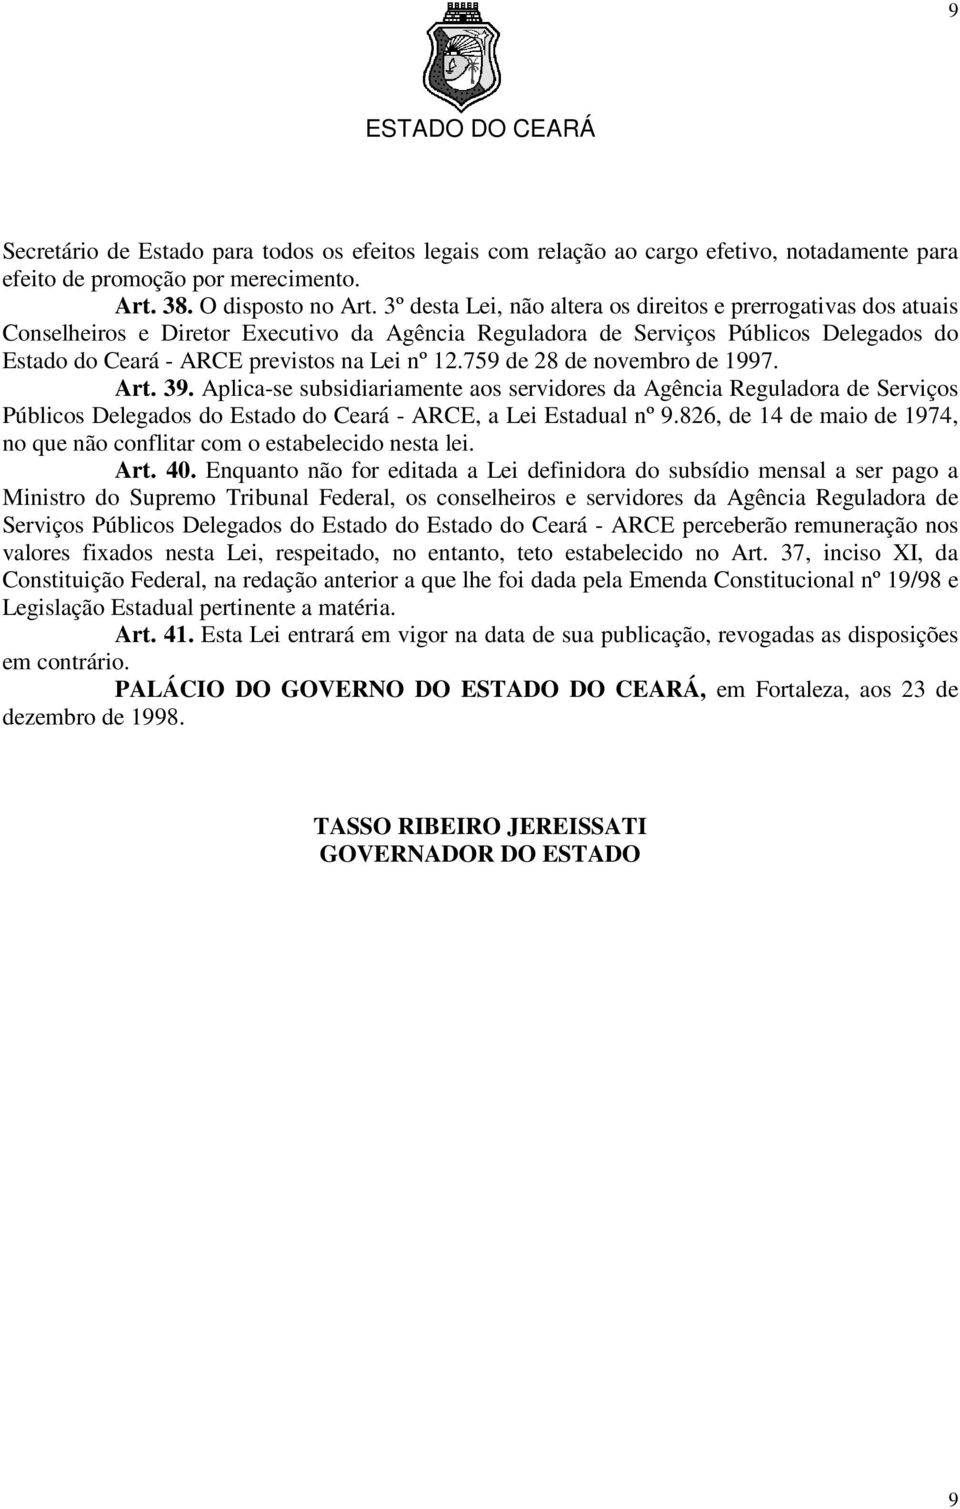 759 de 28 de novembro de 1997. Art. 39. Aplica-se subsidiariamente aos servidores da Agência Reguladora de Serviços Públicos Delegados do Estado do Ceará - ARCE, a Lei Estadual nº 9.